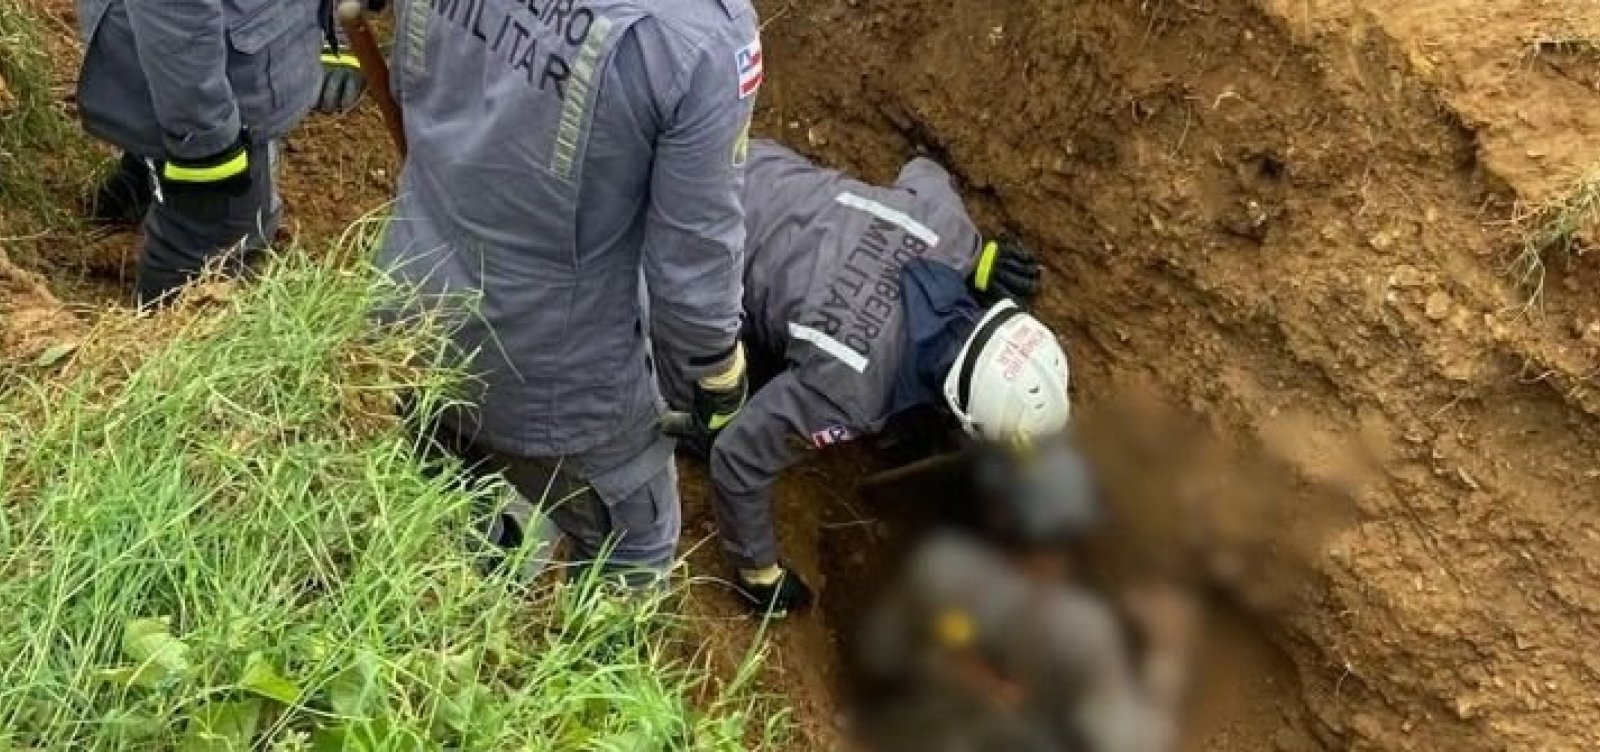 Bombeiros resgatam trabalhador que ficou parcialmente soterrado durante instalação de manilhas